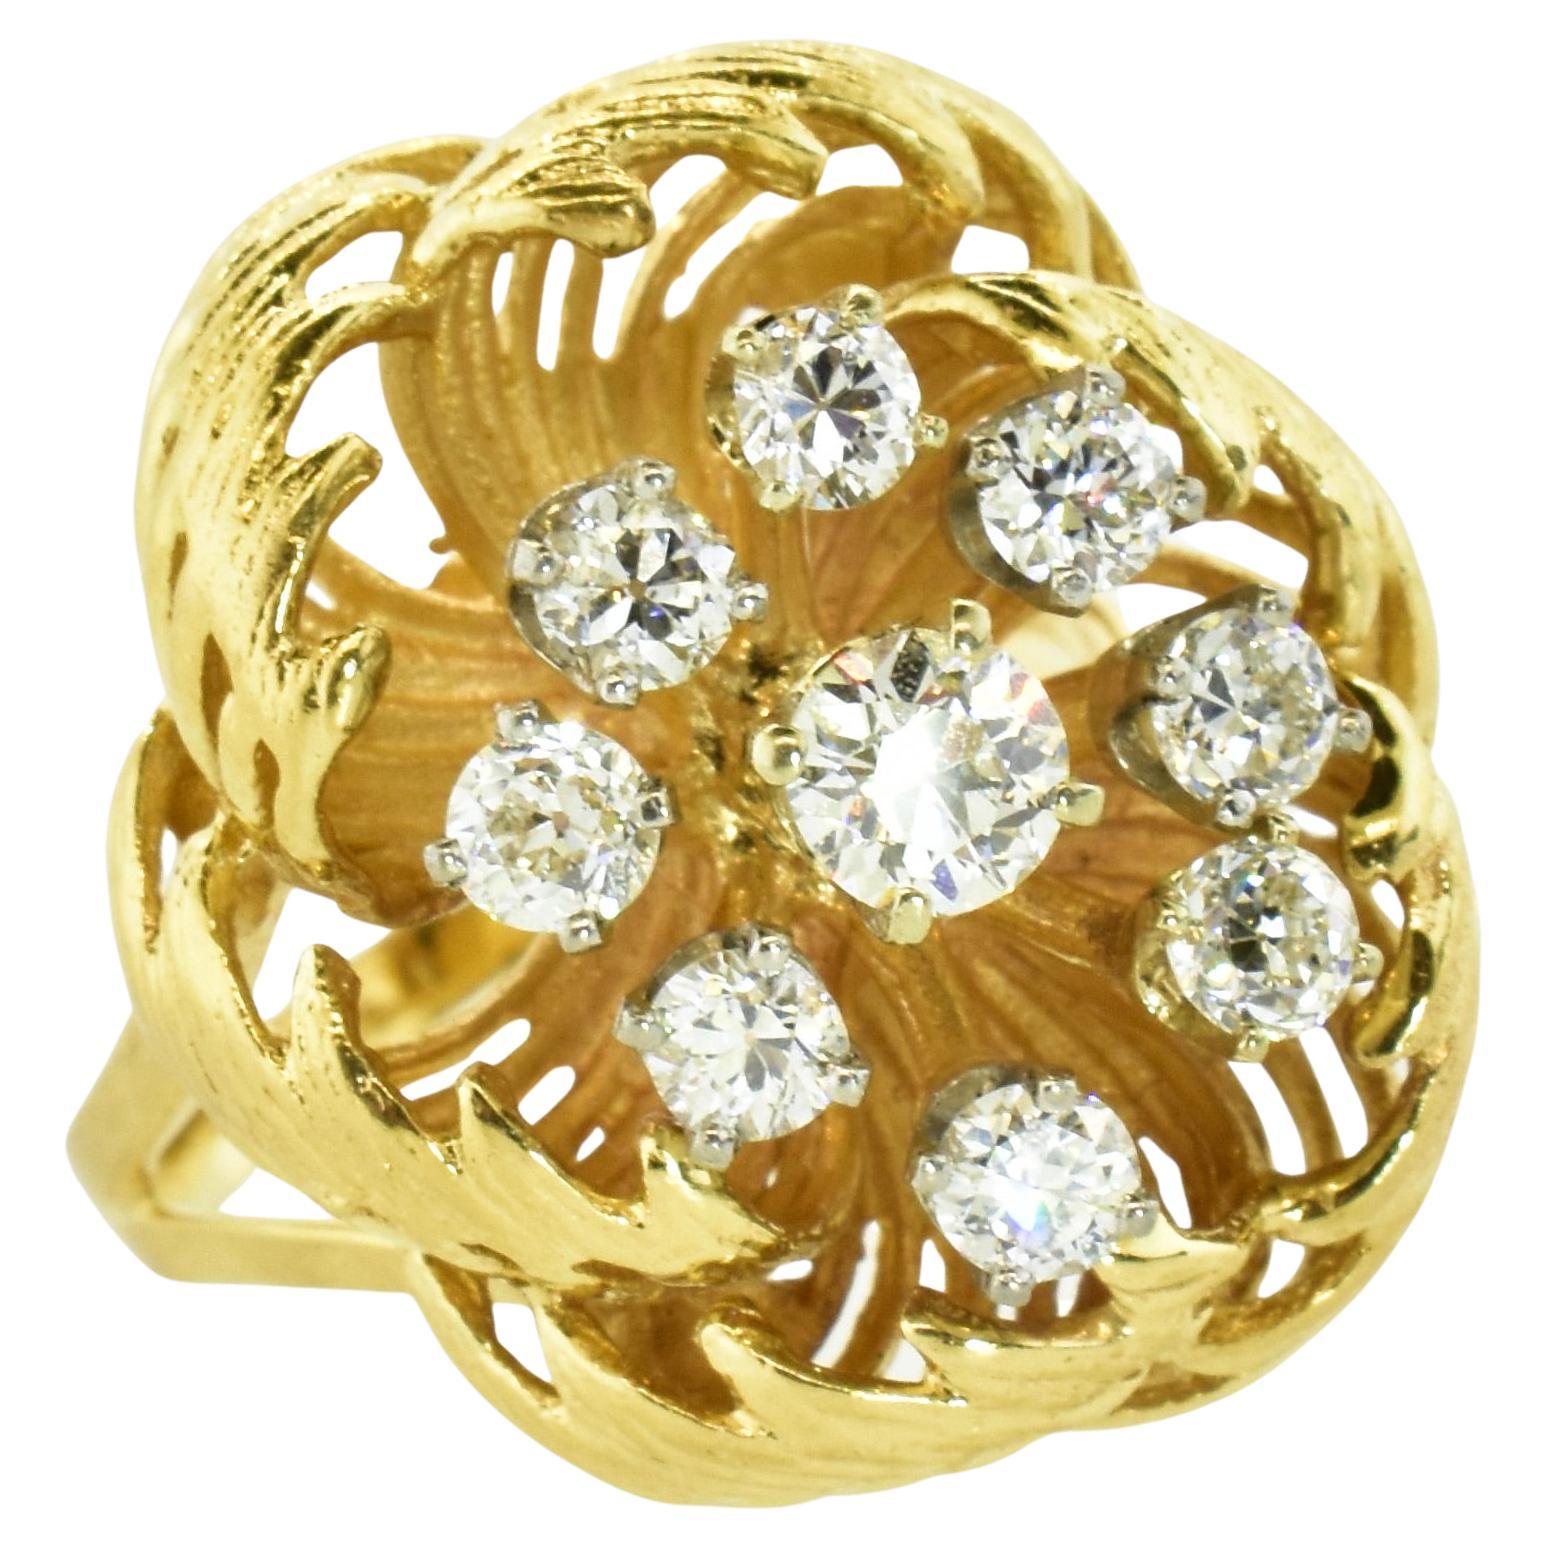 Cette grande bague en or jaune avec un motif floral possède 9 diamants ronds de taille brillant bien taillés et sertis en épingle dans l'or blanc.  Ces diamants, dont le poids est estimé à 1,35 cts, sont presque incolores (H) et très légèrement